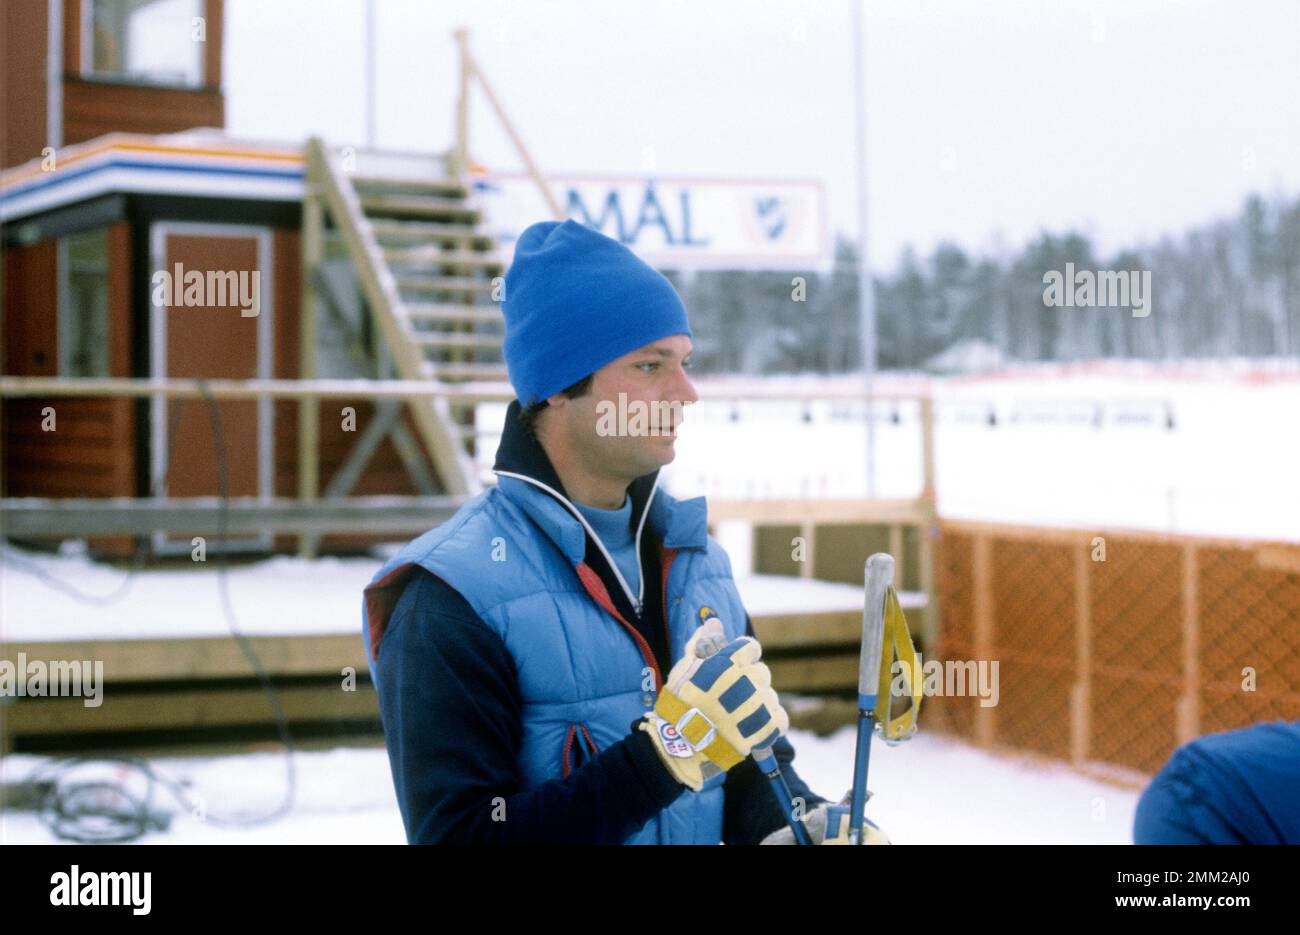 Carl XVI Gustaf, roi de Suède. Né le 30 avril 1946. Photo pendant les championnats de ski suédois à Mora 1979. Banque D'Images